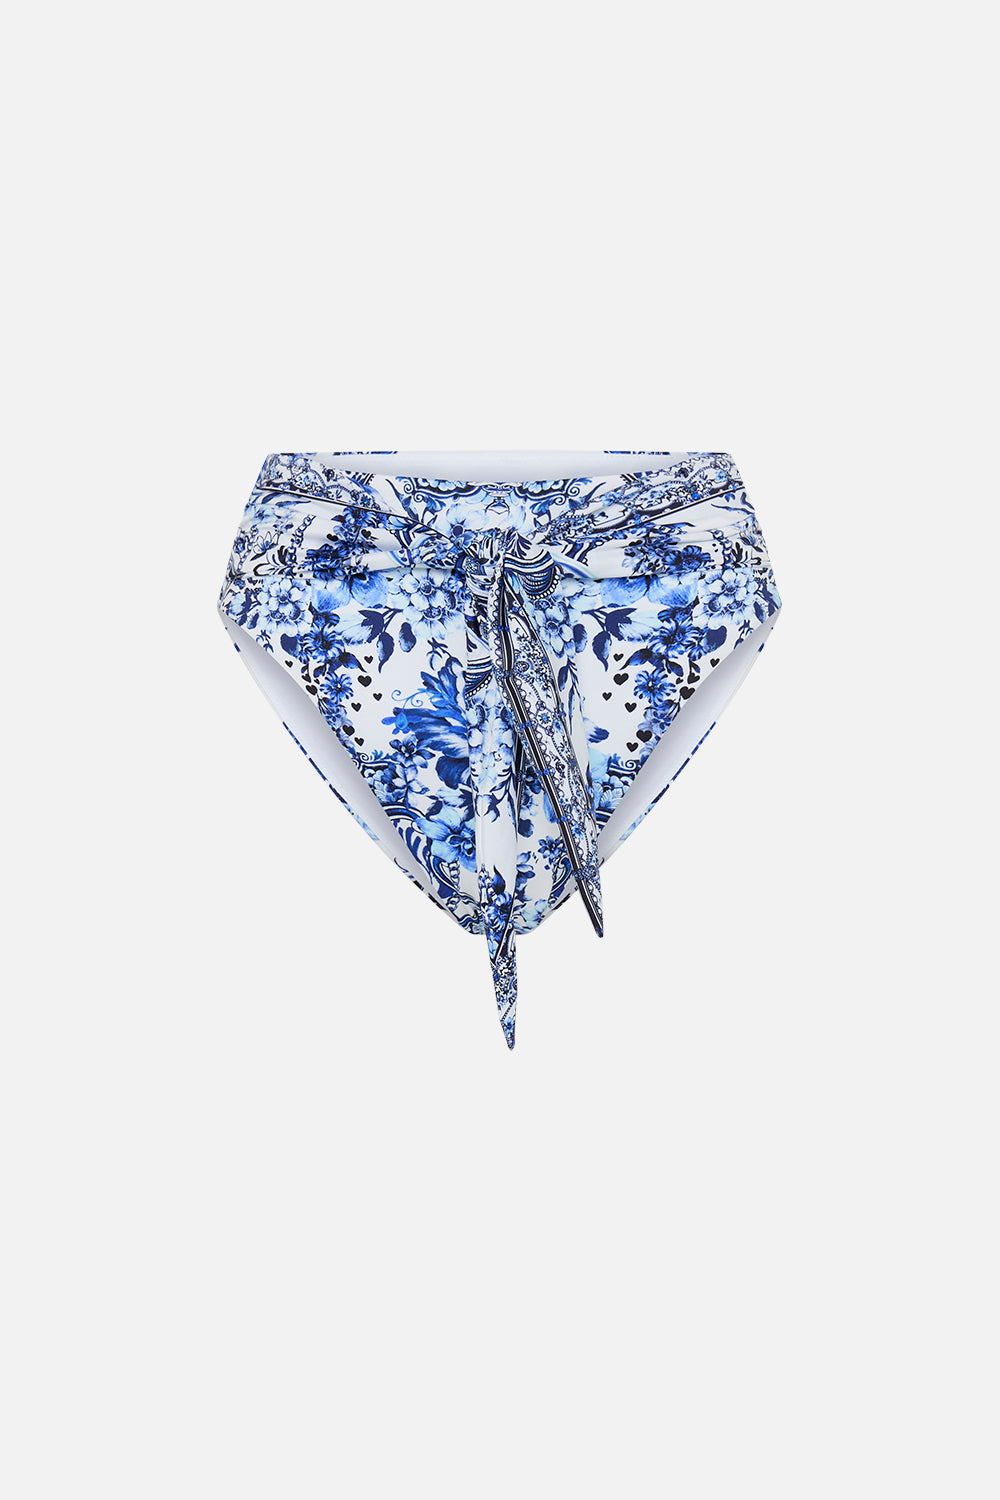 CAMILLA high waisted bikini bottoms in G;aze And Graze print 